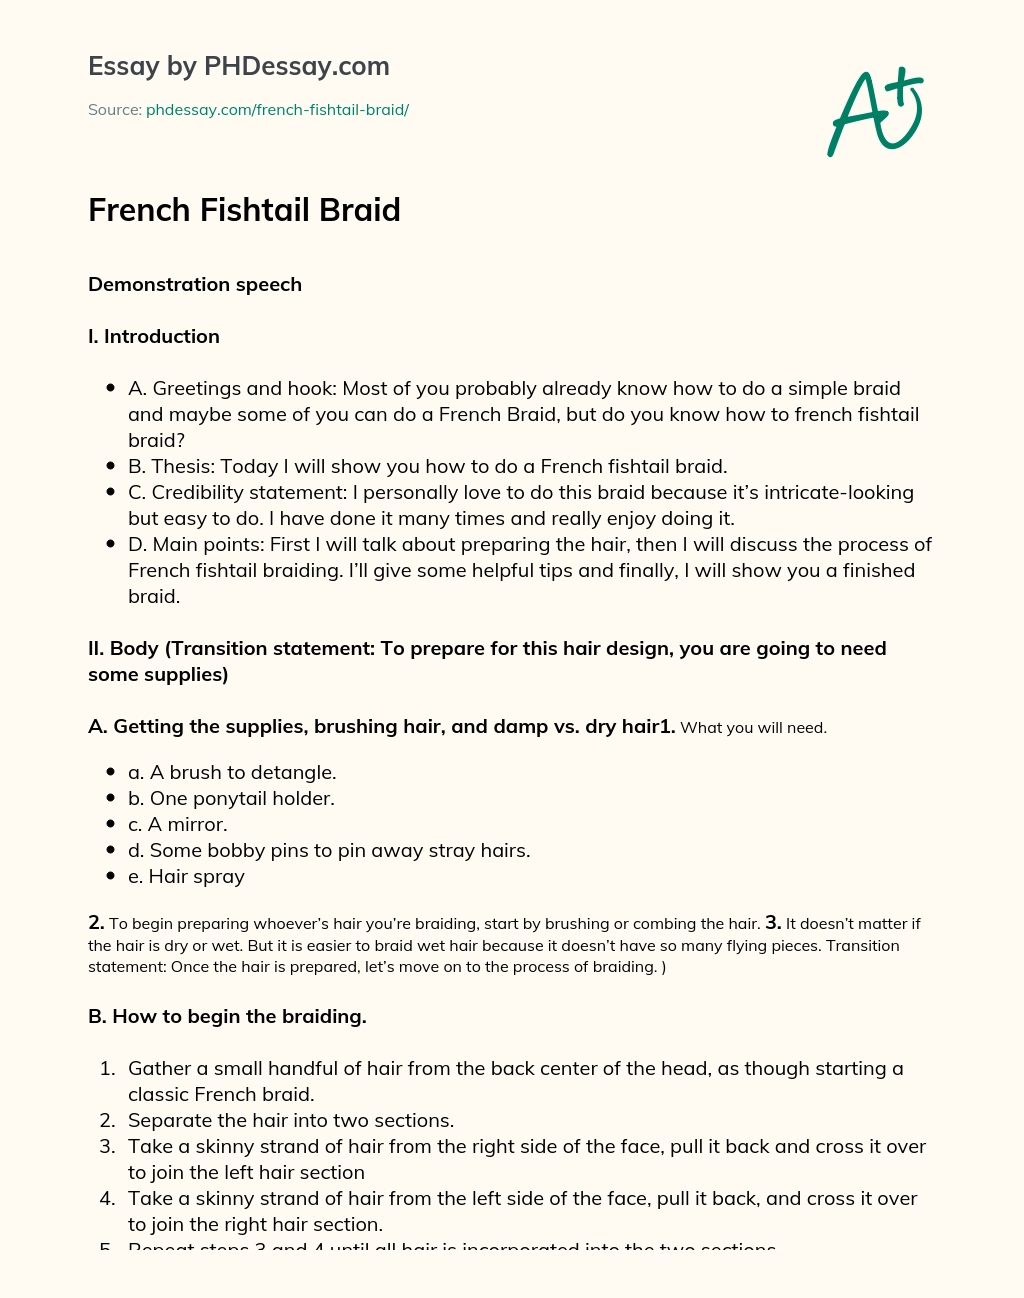 French Fishtail Braid - PHDessay.com